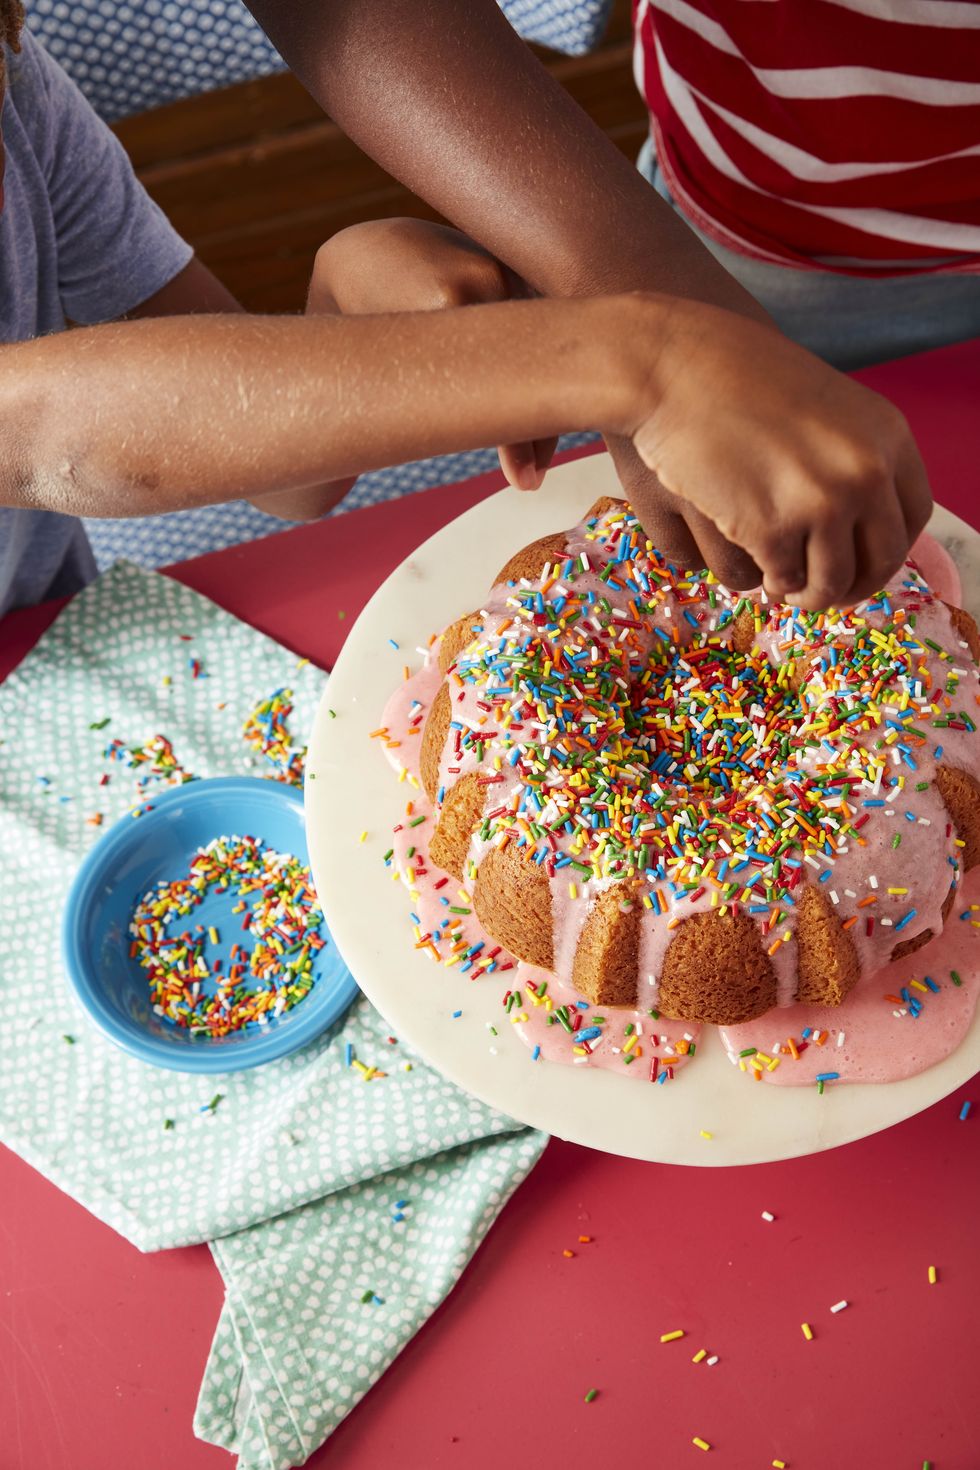 30 Best Graduation Cake Ideas Recipes For Homemade Cakes